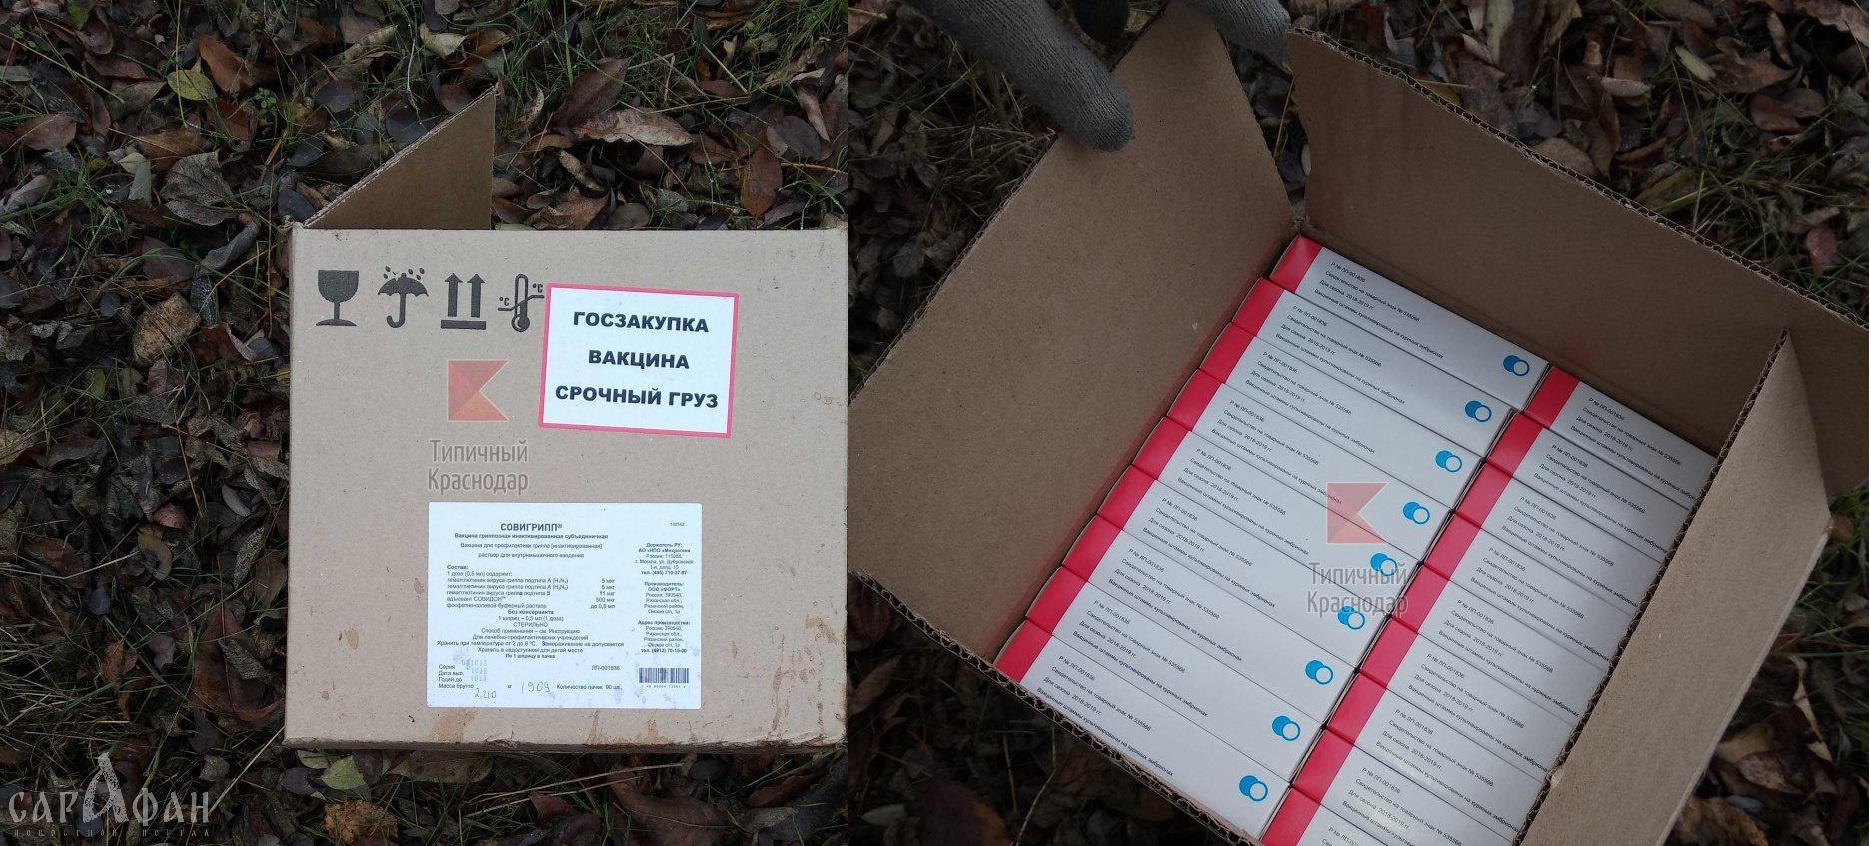 Коробки с госзаказом вакцин выбросили в лесополосе Краснодара